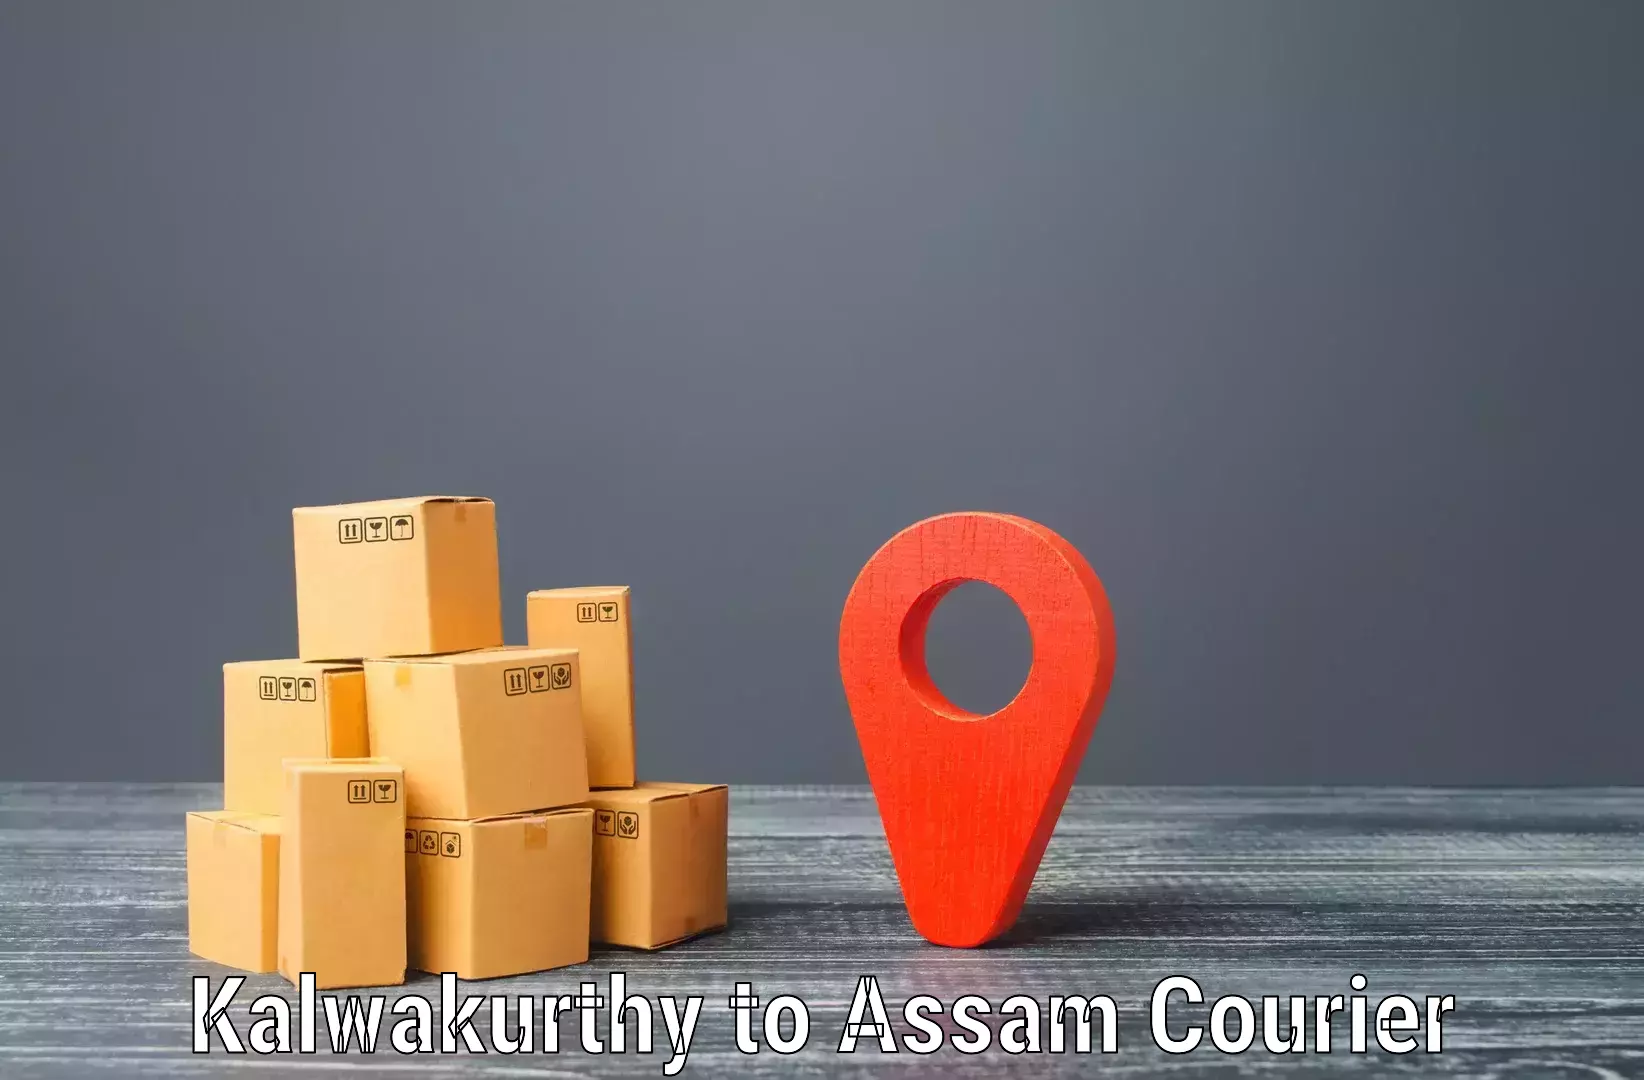 Optimized courier strategies Kalwakurthy to Mangaldoi